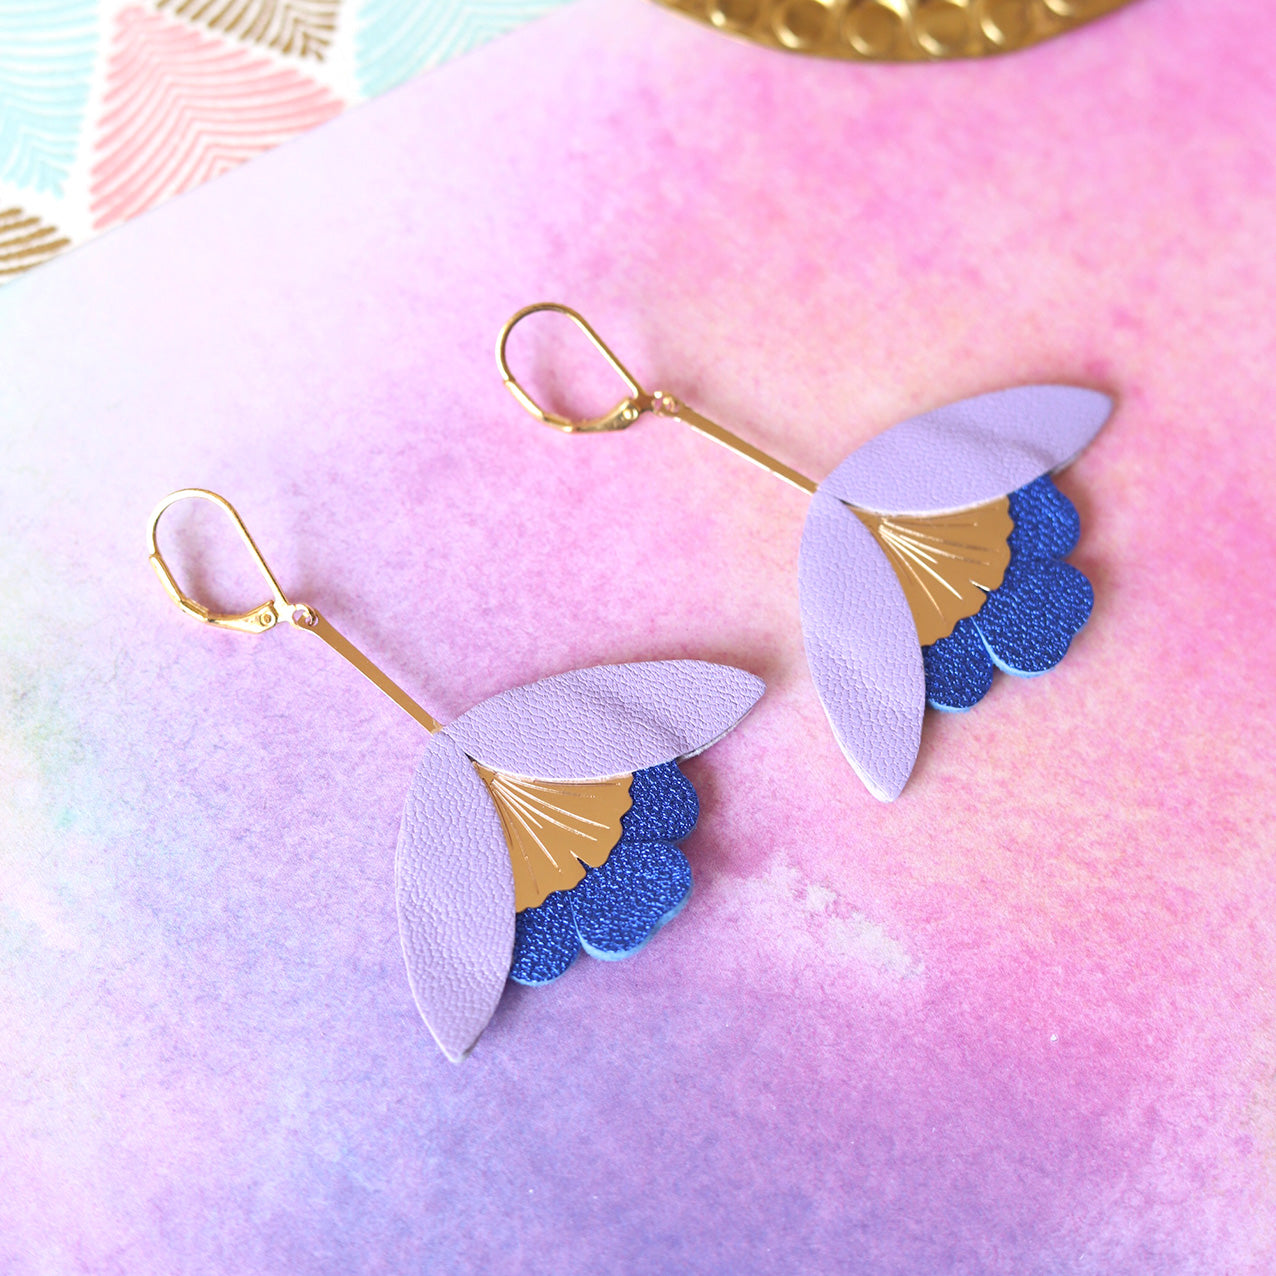 Ginkgo-Blume-Ohrringe aus Leder in Mauve und Metallic-Ultramarinblau